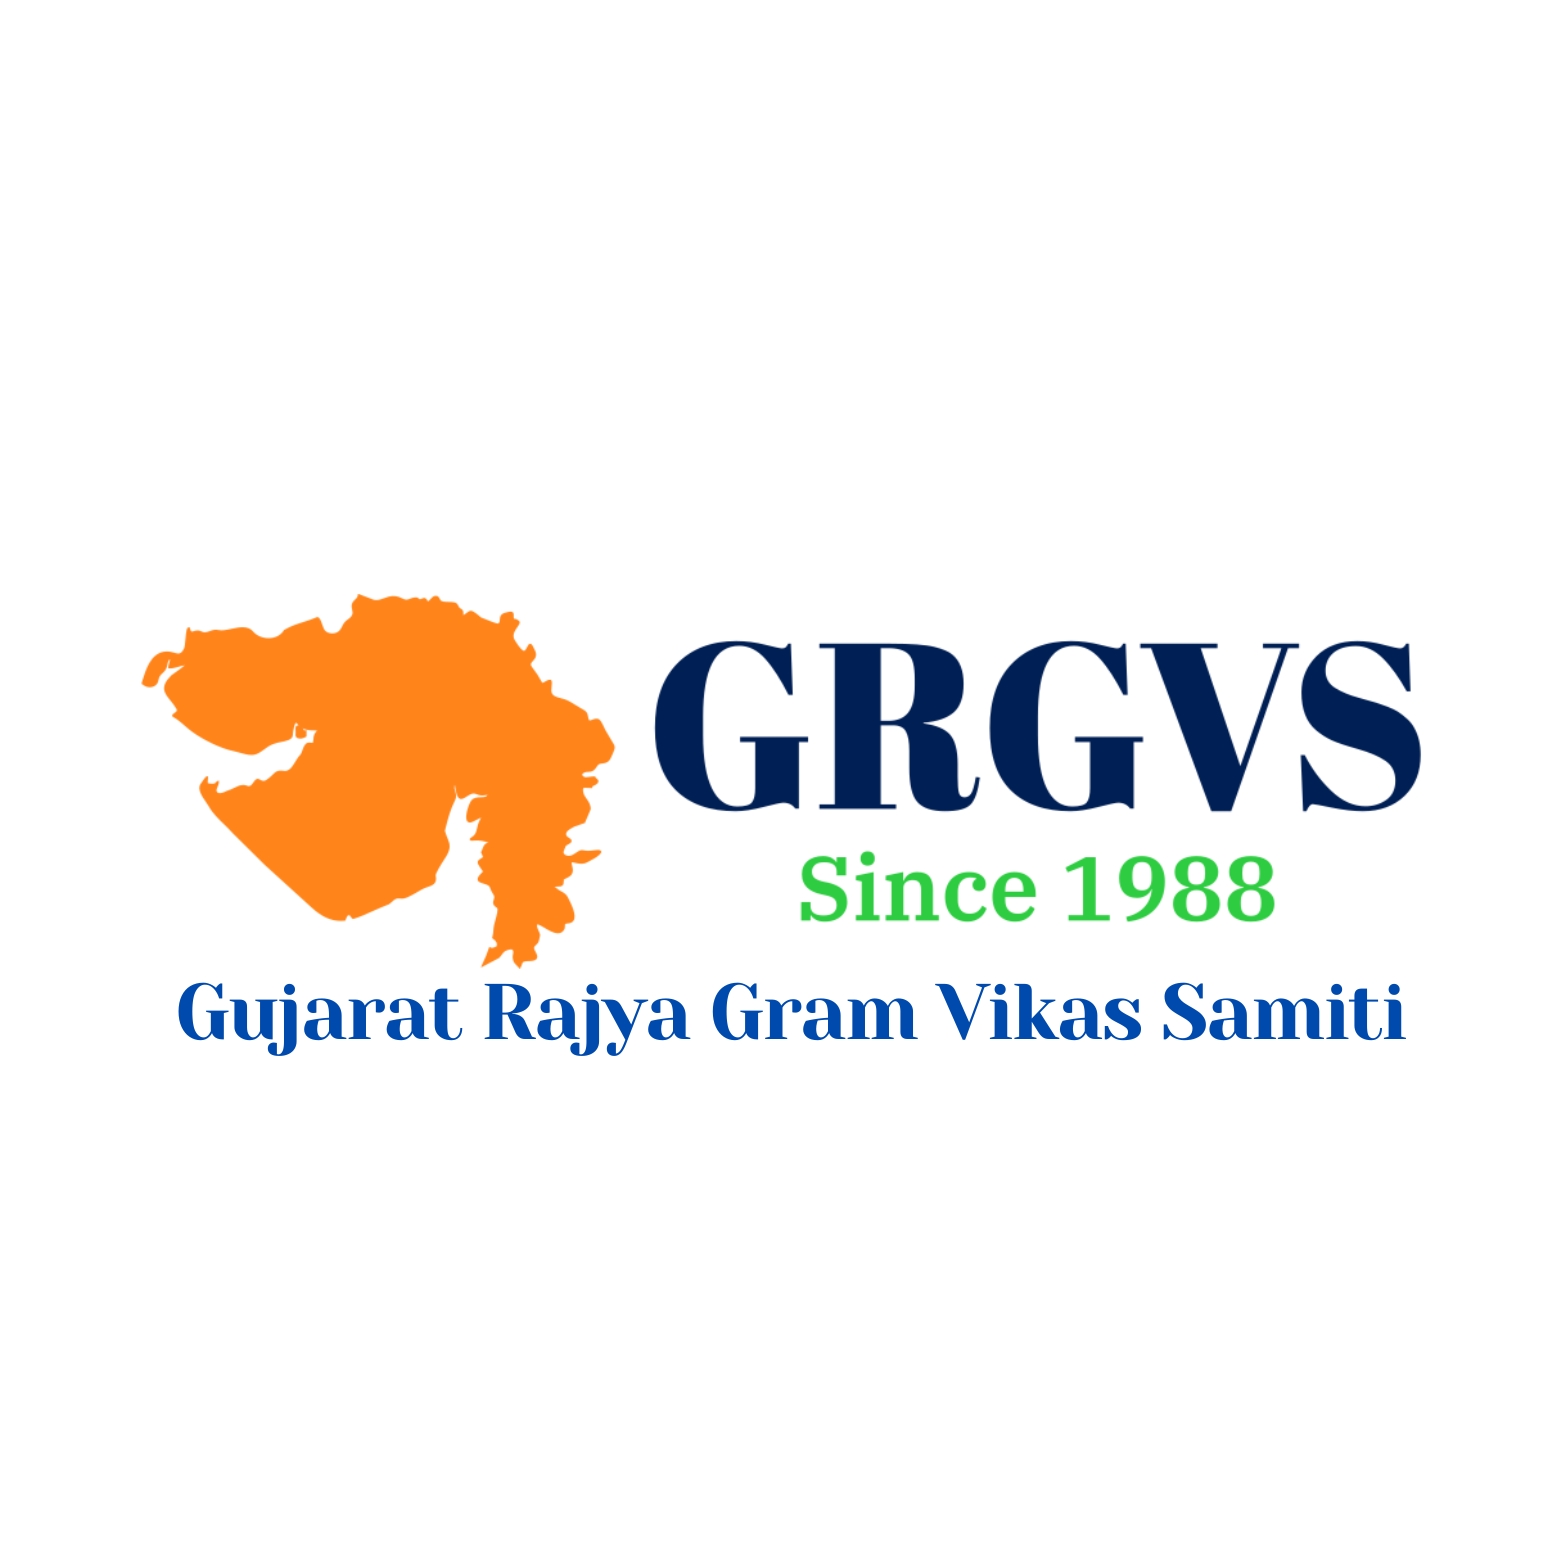 Gujarat Rajya Gram Vikas Samiti (GRGVS) logo